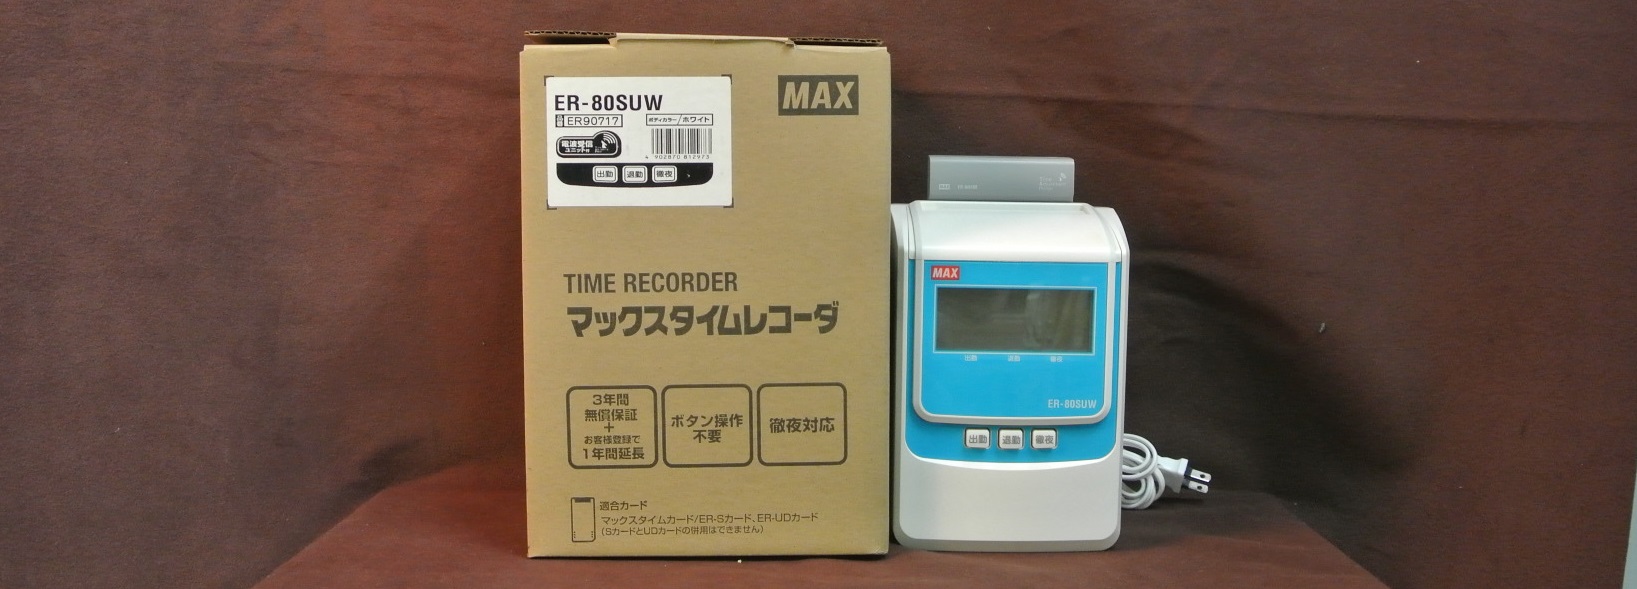 電波時計付きです♪ MAX（マックス） 電波時計付き・電子タイムレコーダー ER-80SUW 群馬県伊勢崎市リサイクルセンターふれんど